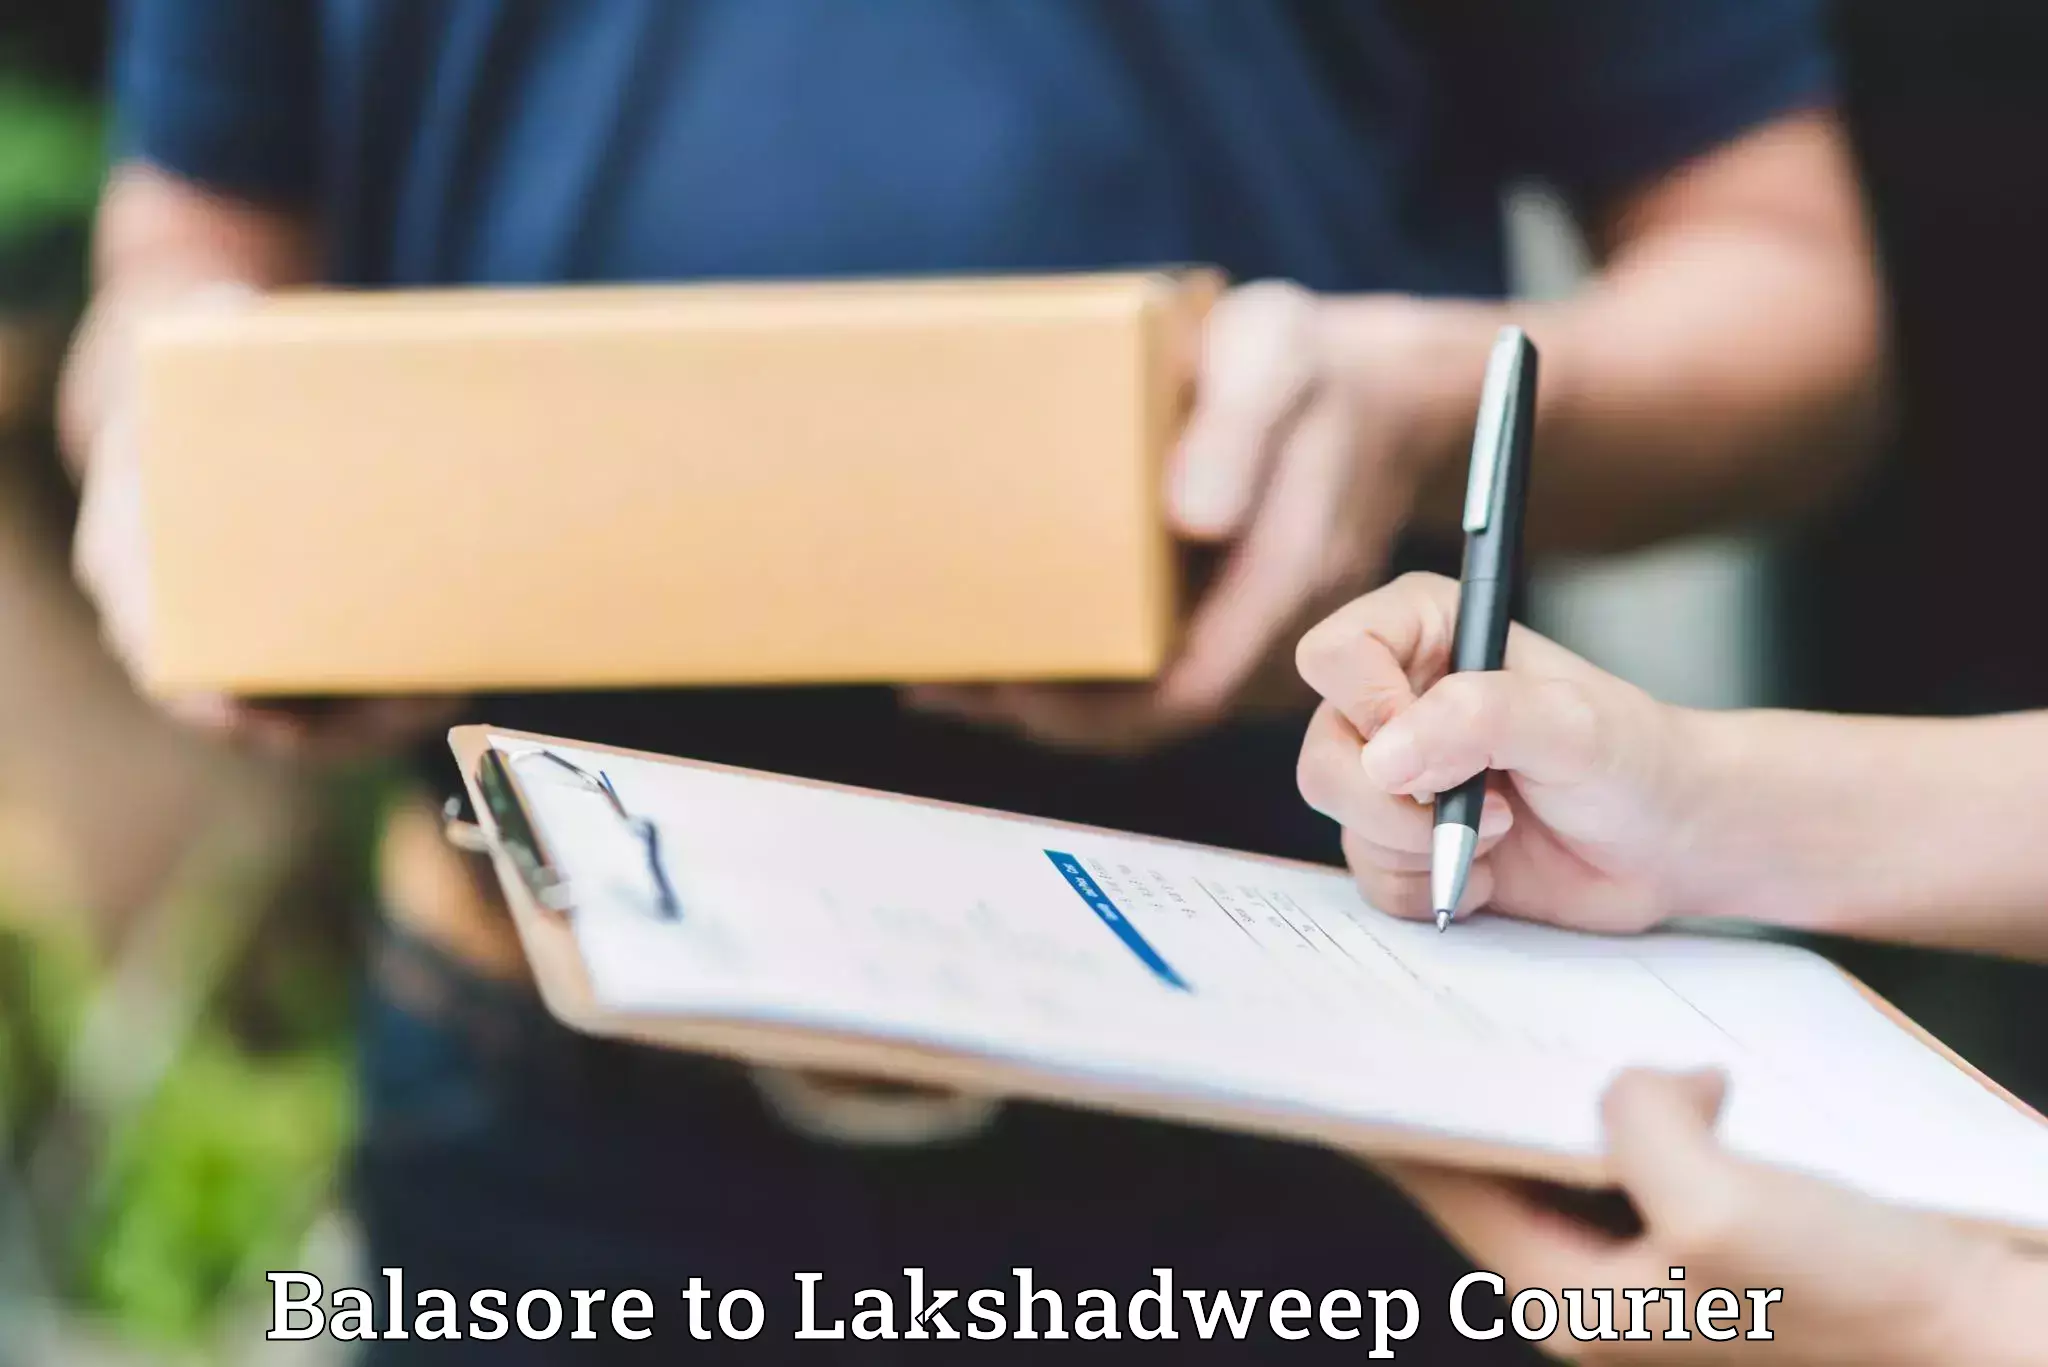 Furniture transport company Balasore to Lakshadweep